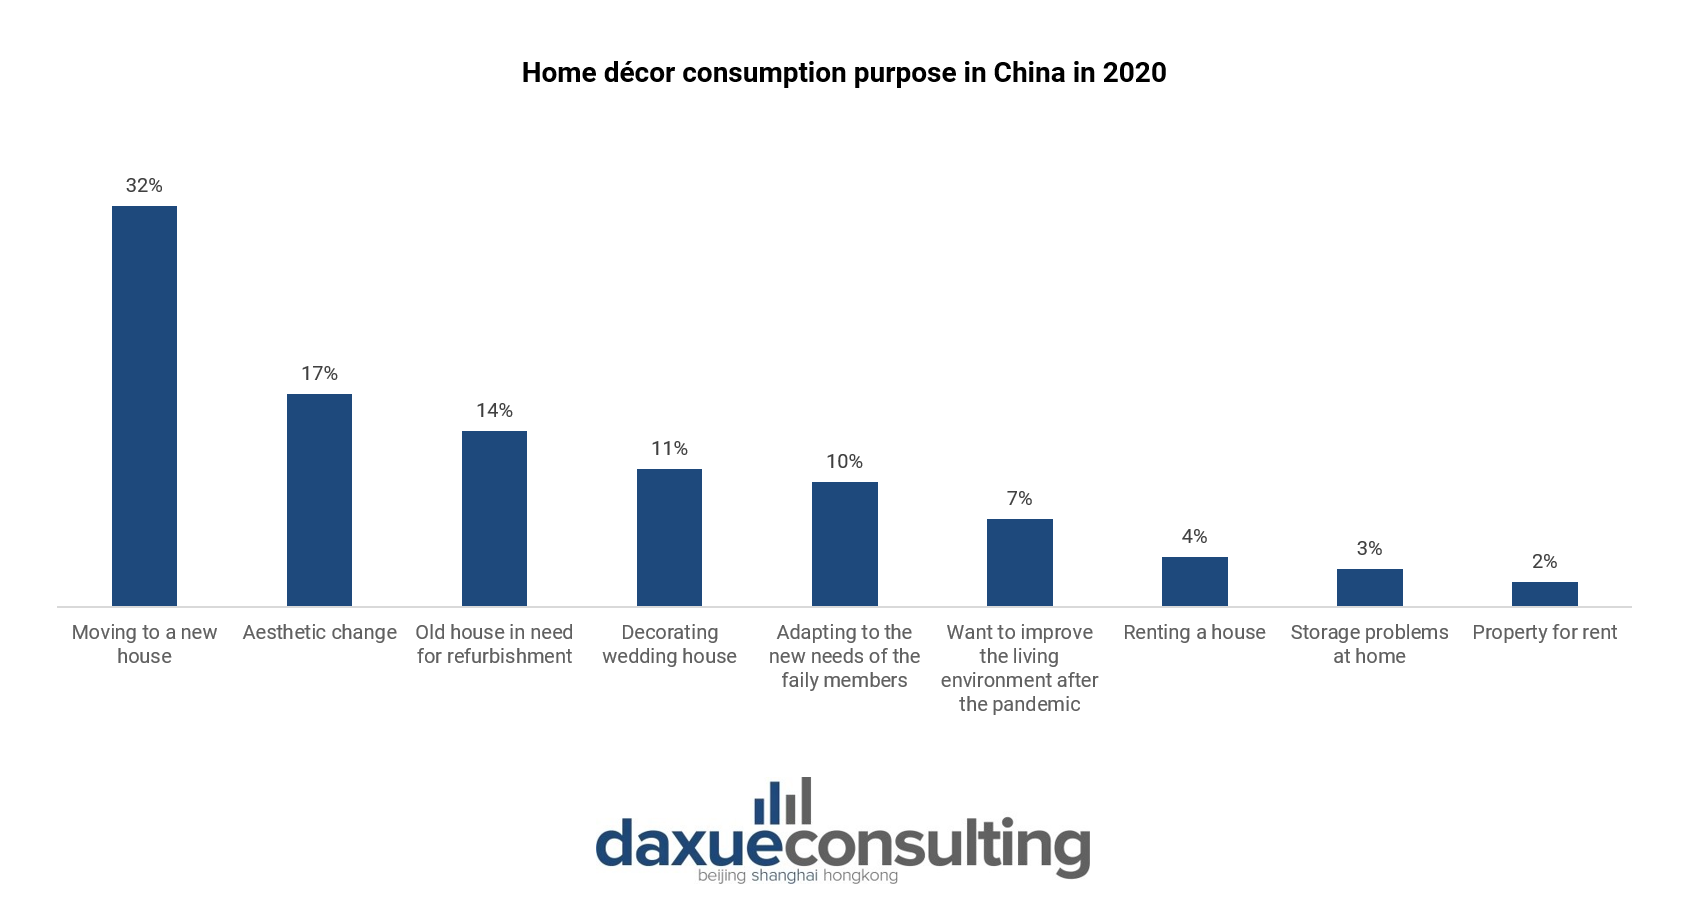 Home décor consumption motivation in 2020